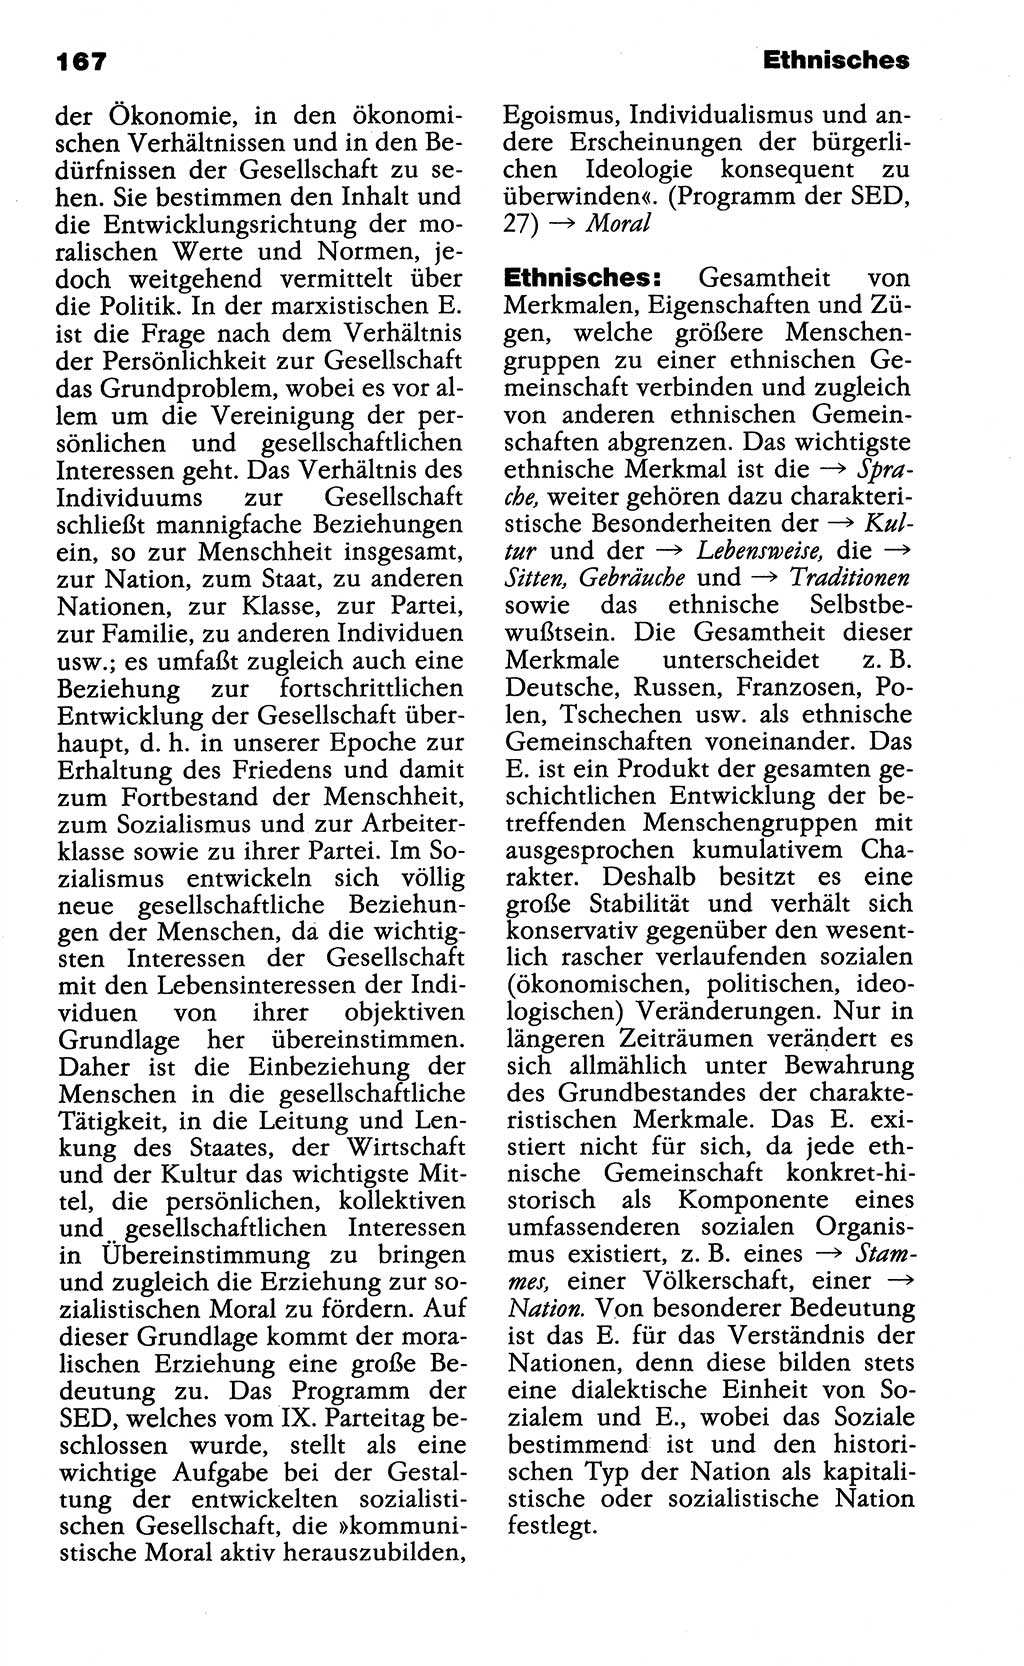 Wörterbuch der marxistisch-leninistischen Philosophie [Deutsche Demokratische Republik (DDR)] 1985, Seite 167 (Wb. ML Phil. DDR 1985, S. 167)